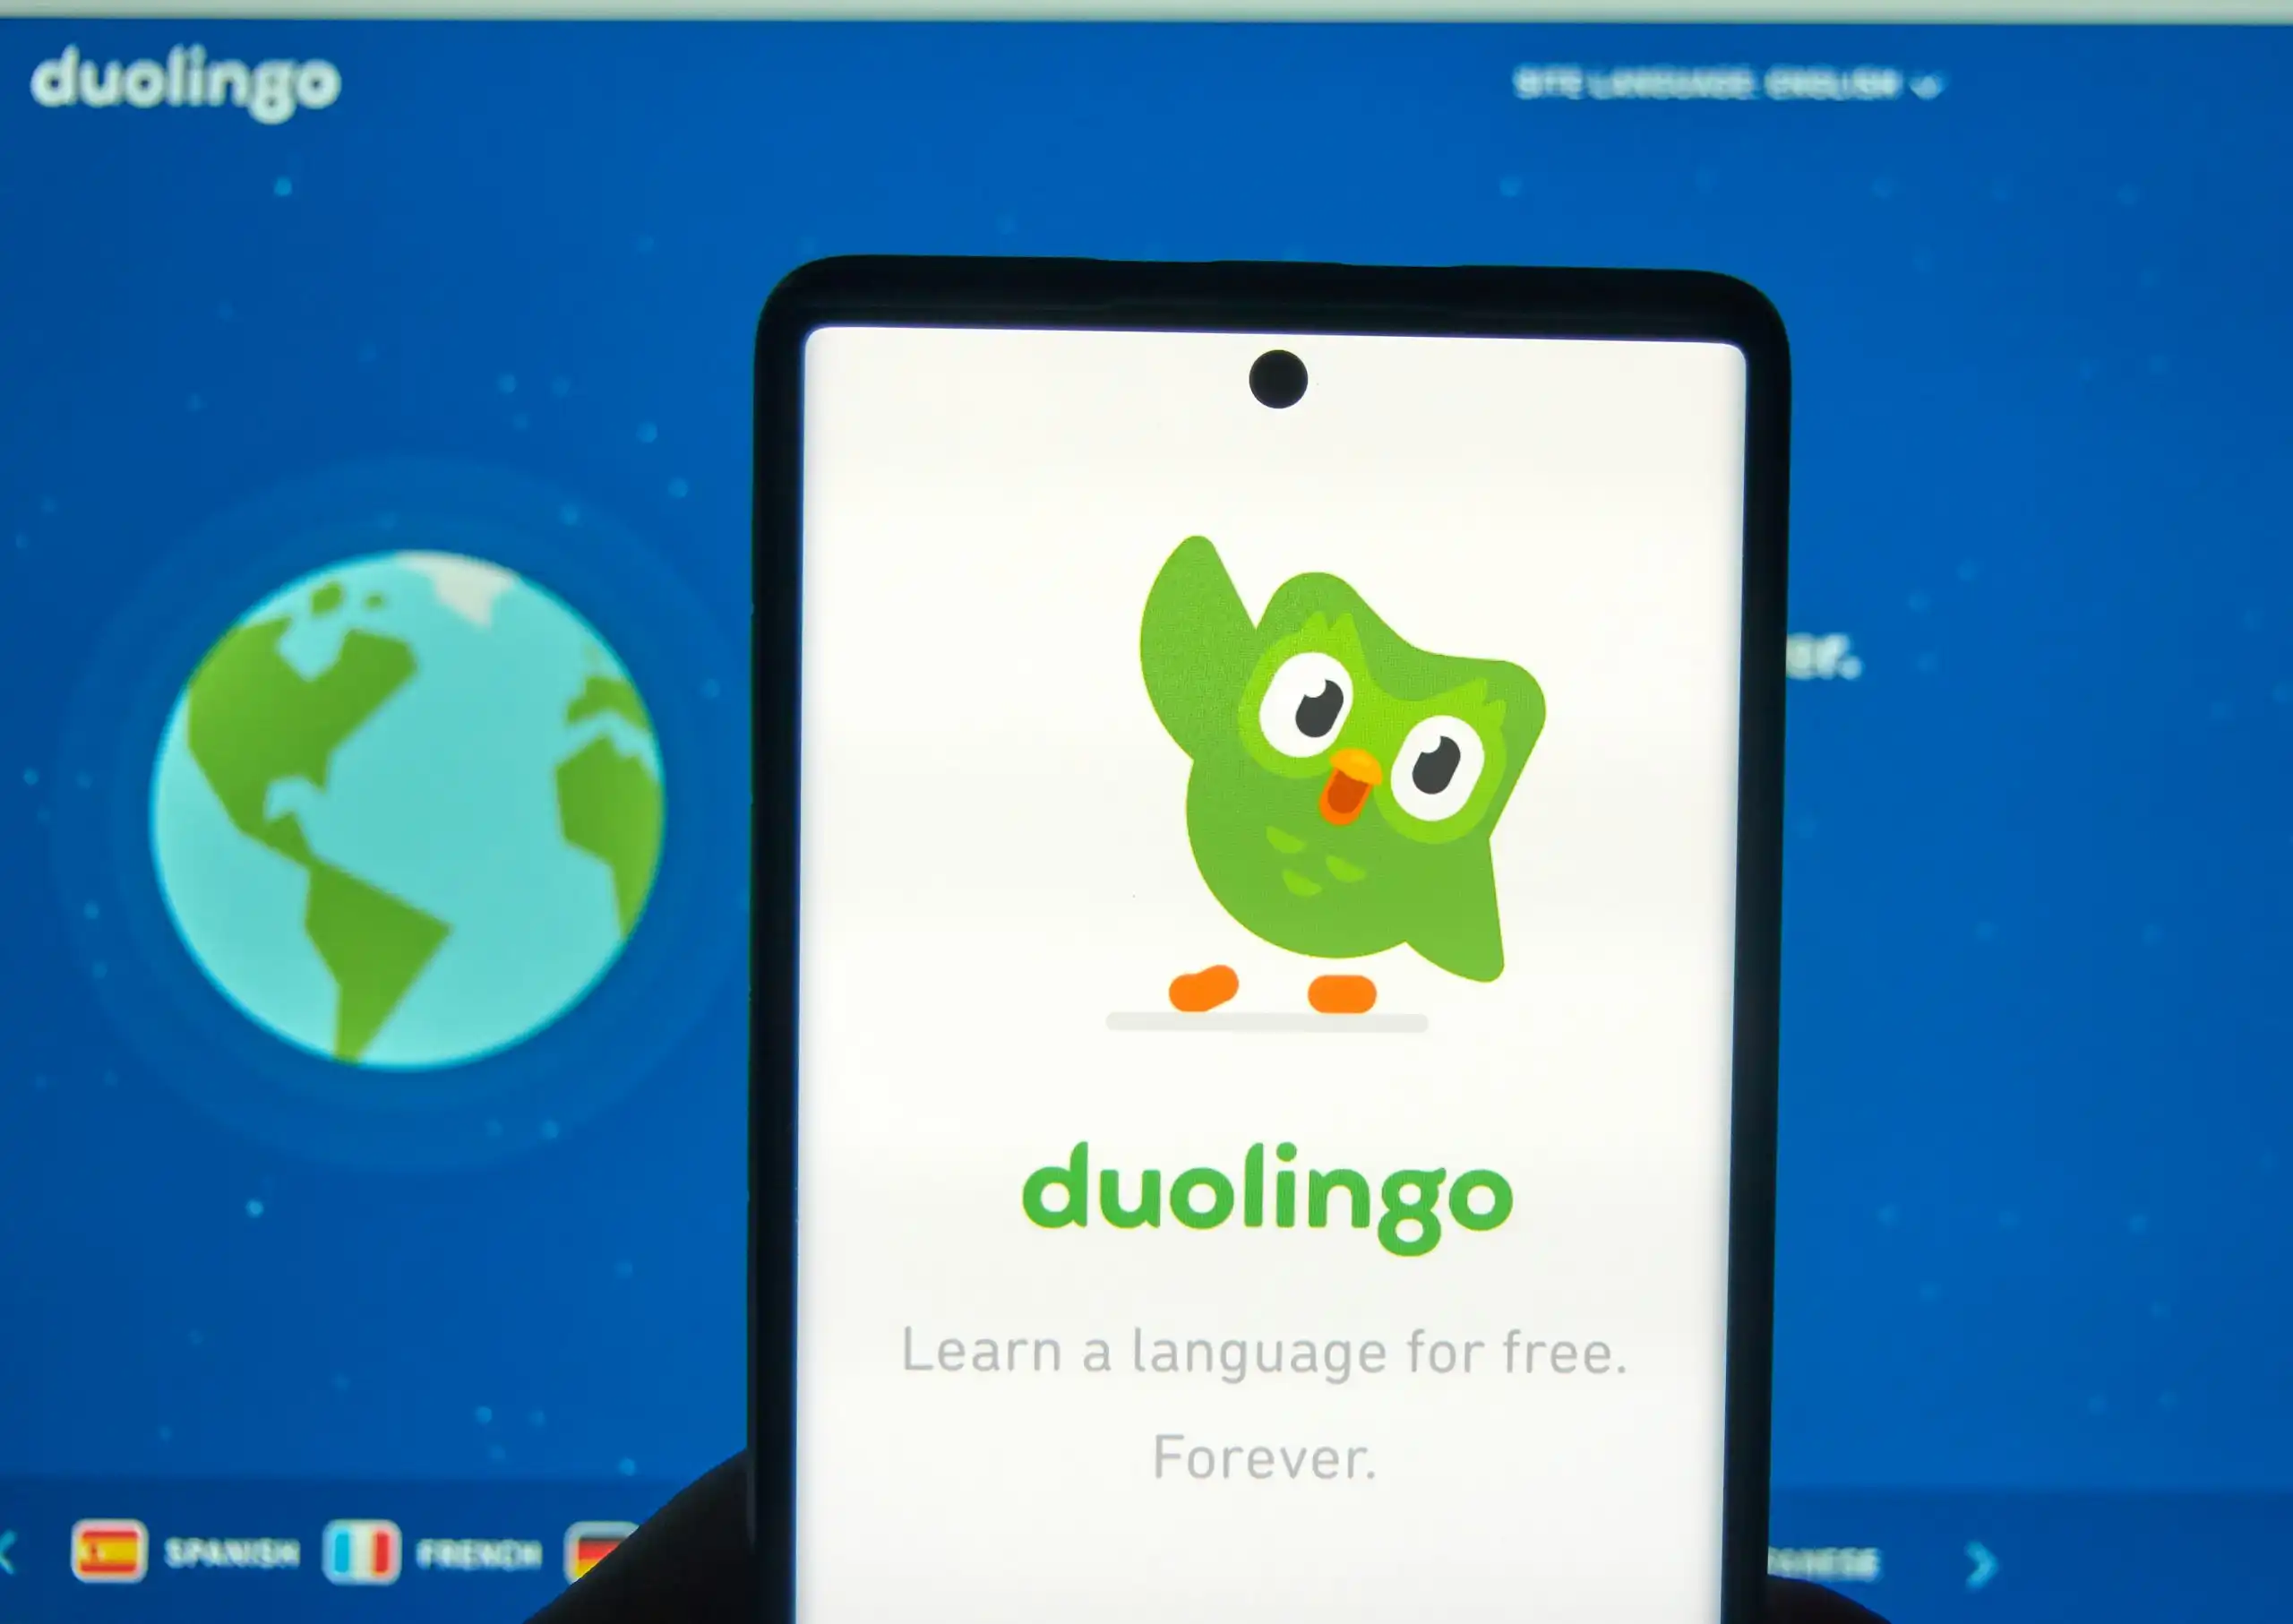  Como se Inscrever no Curso de Inglês Grátis Duolingo: Passo a Passo